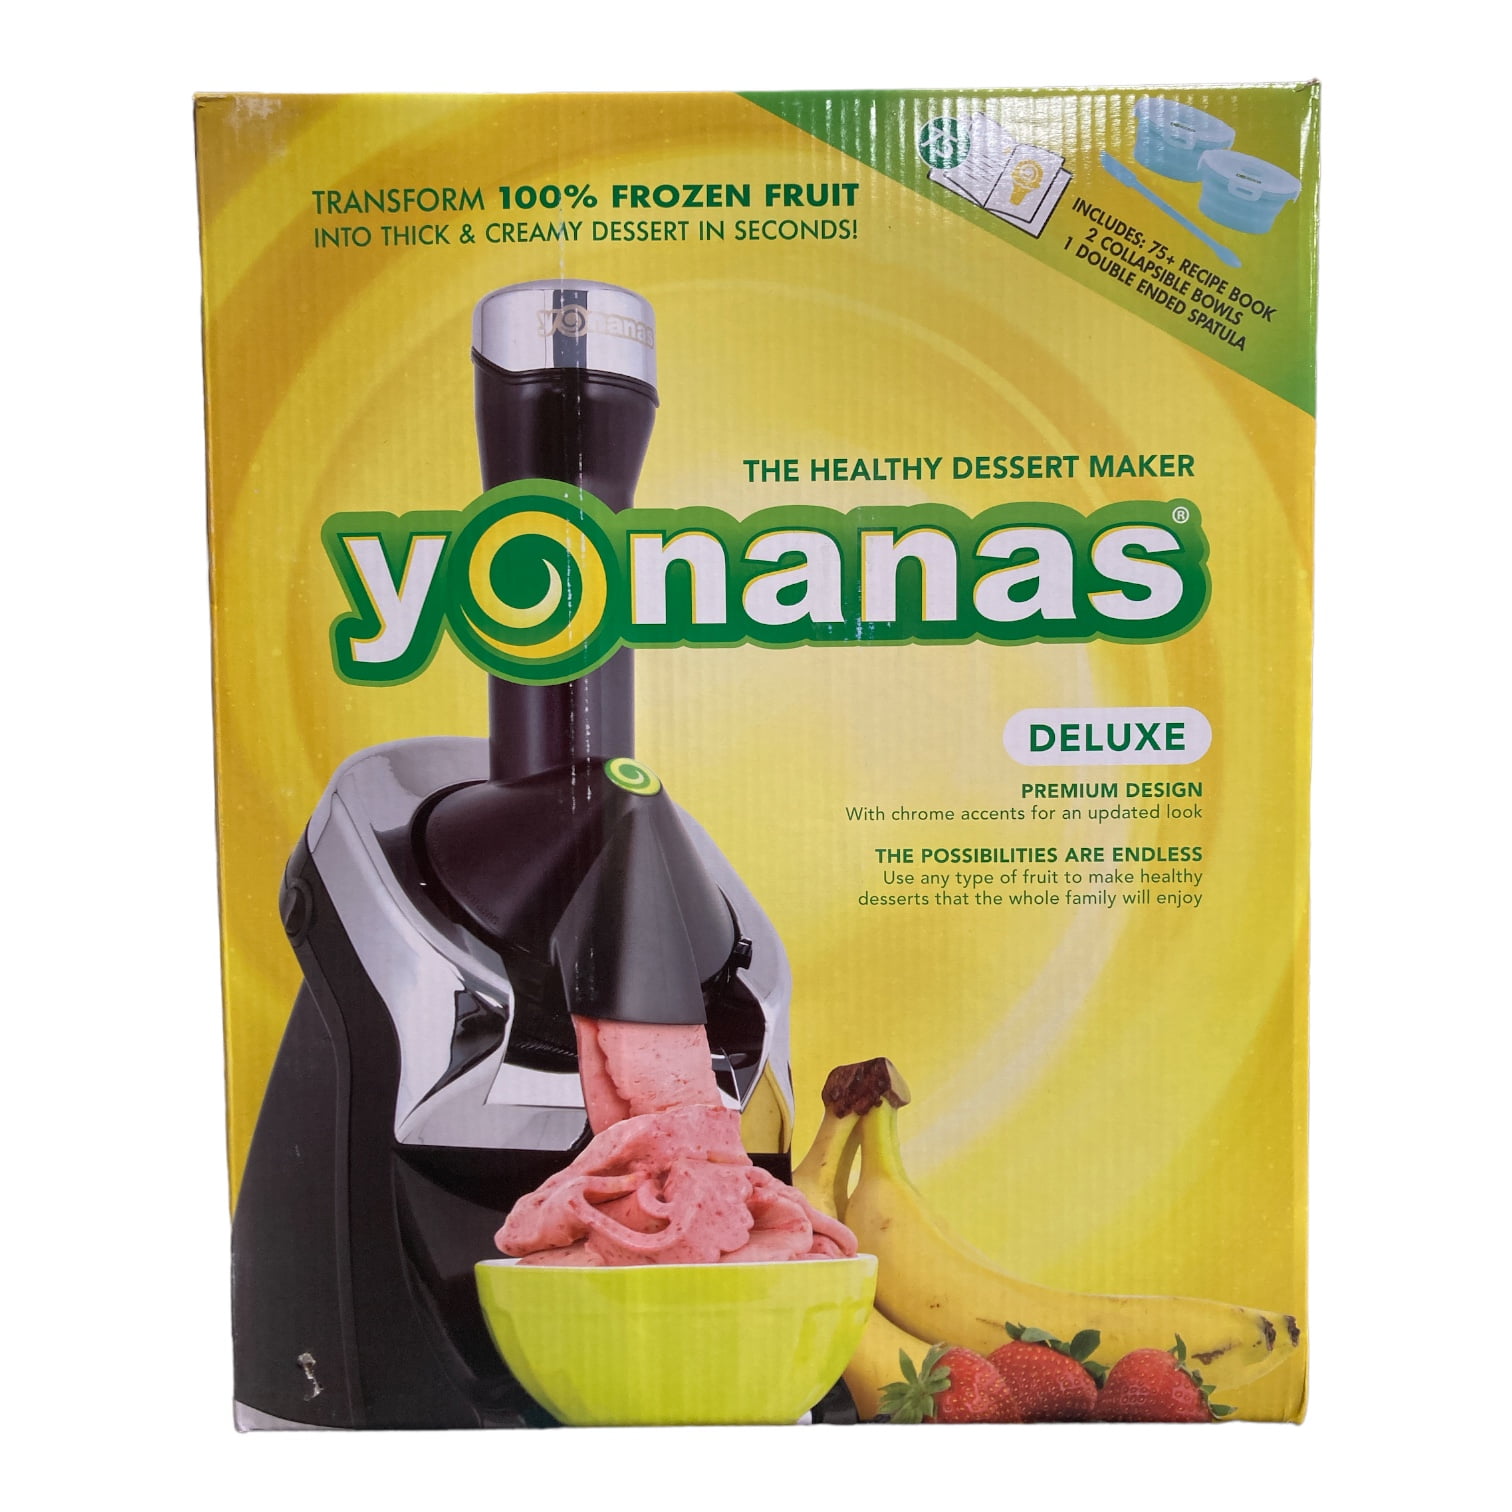 Yonanas Review: An Honest Review of the Frozen Dessert Maker - The Produce  Nerd